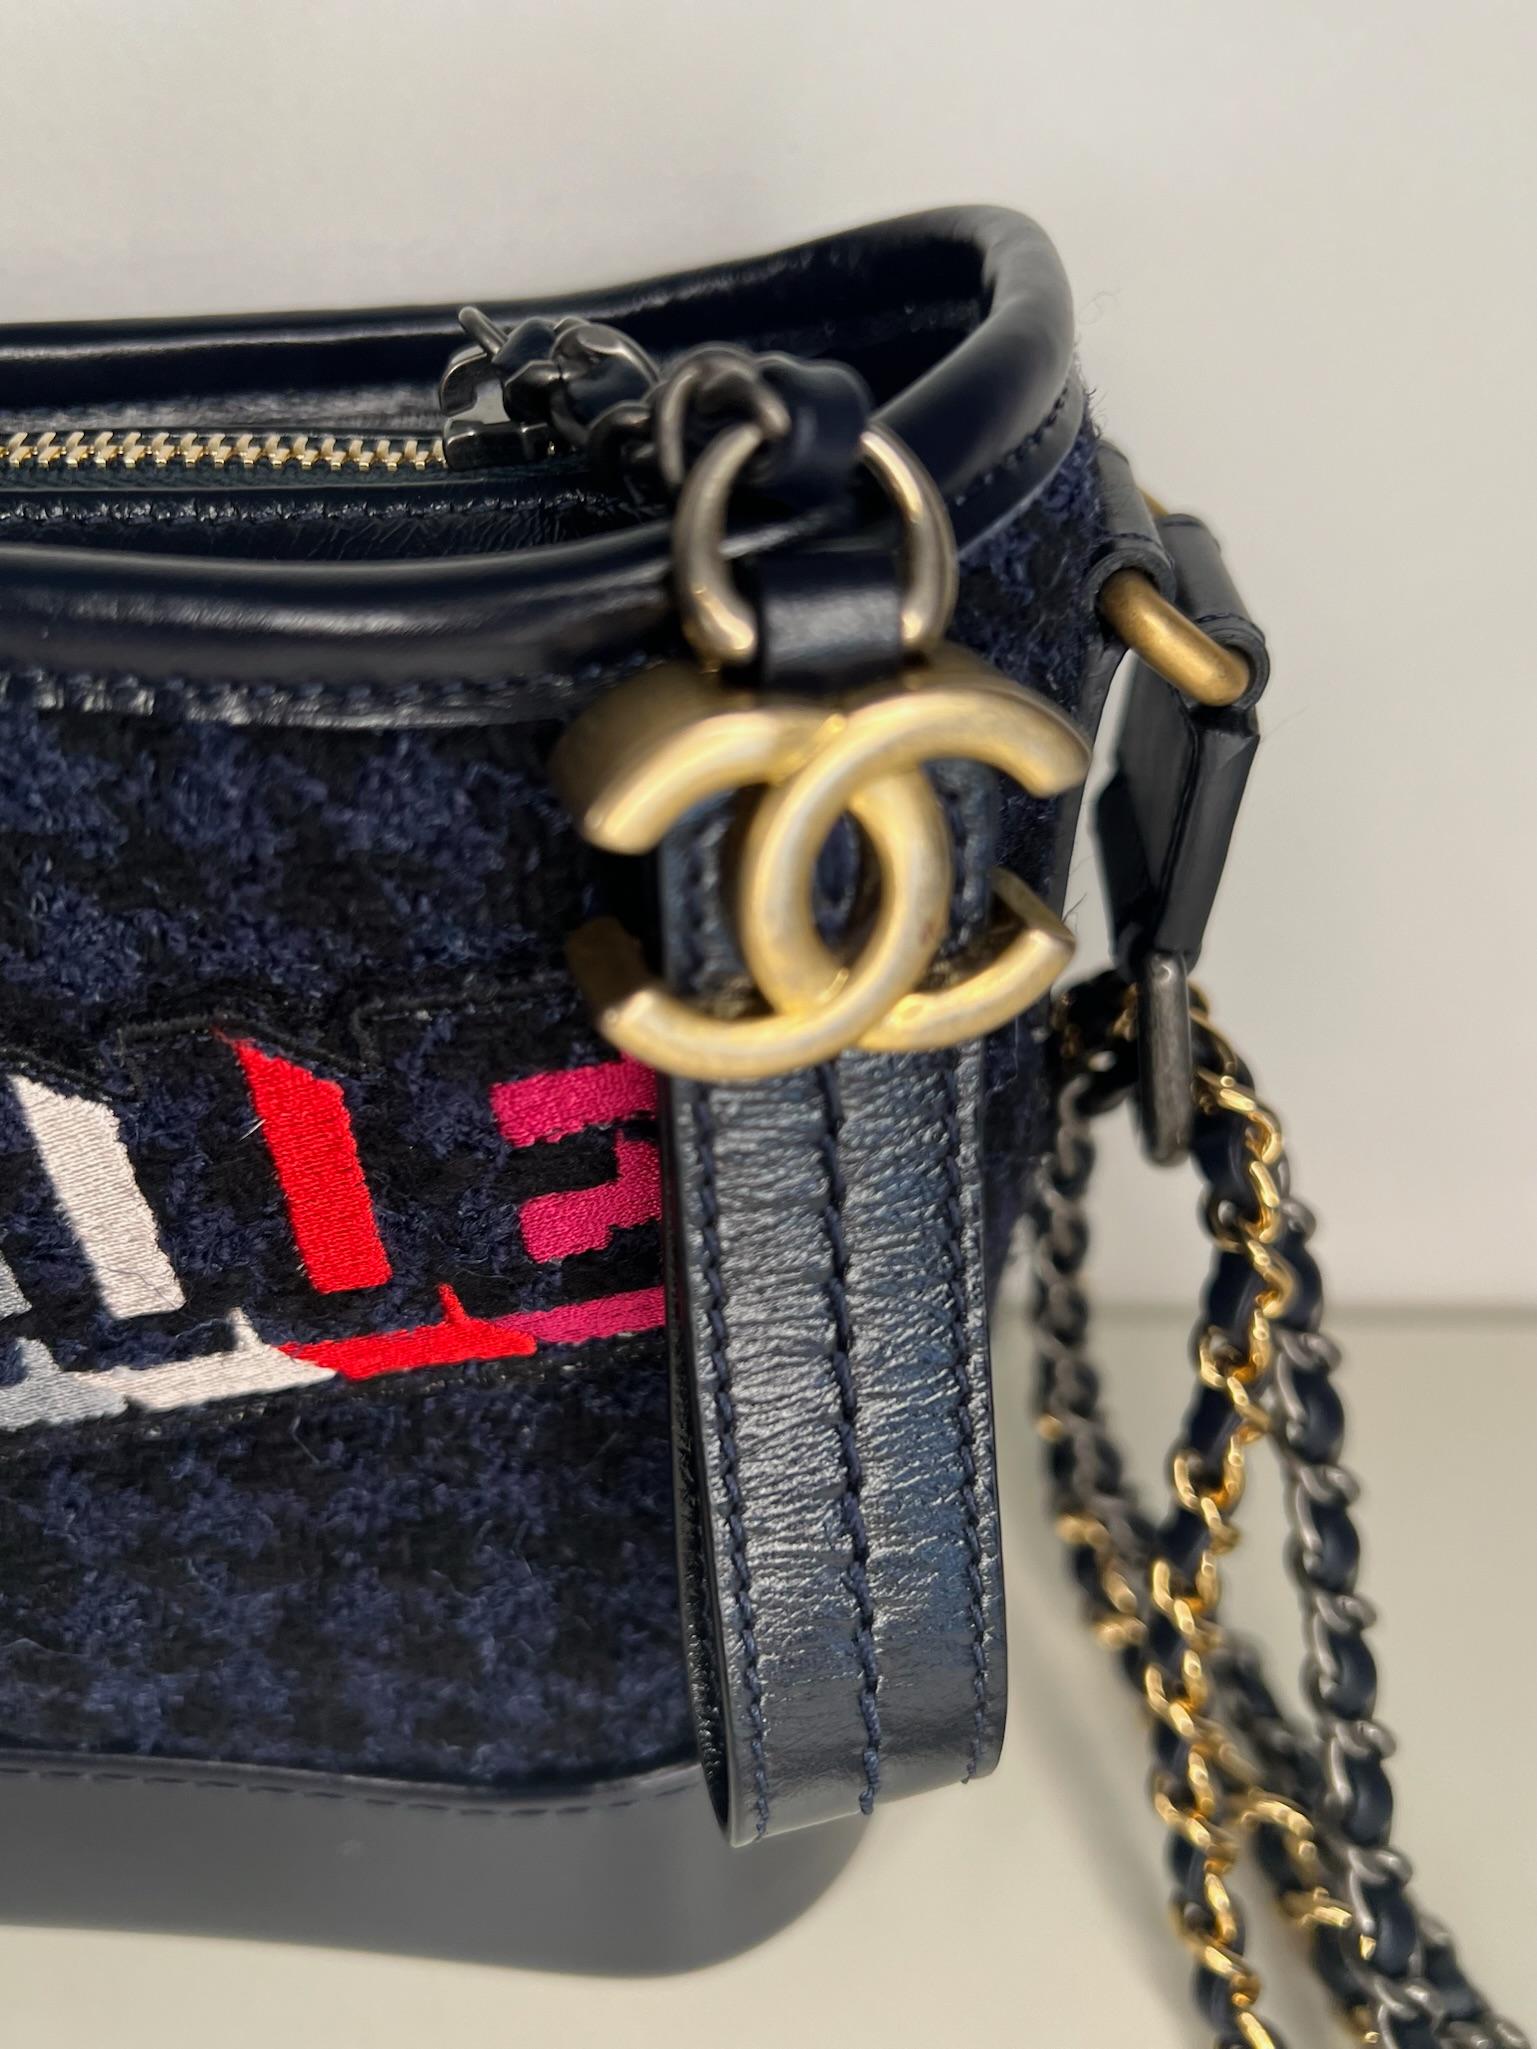 Ce sac hobo Gabrielle super chic de la Collection SALL 2017 de Chanel présente un extérieur en tweed et cuir marine avec un motif 'Gabrielle' multicolore sur le tweed. Le sac est également doté d'une quincaillerie antique multicolore et d'une